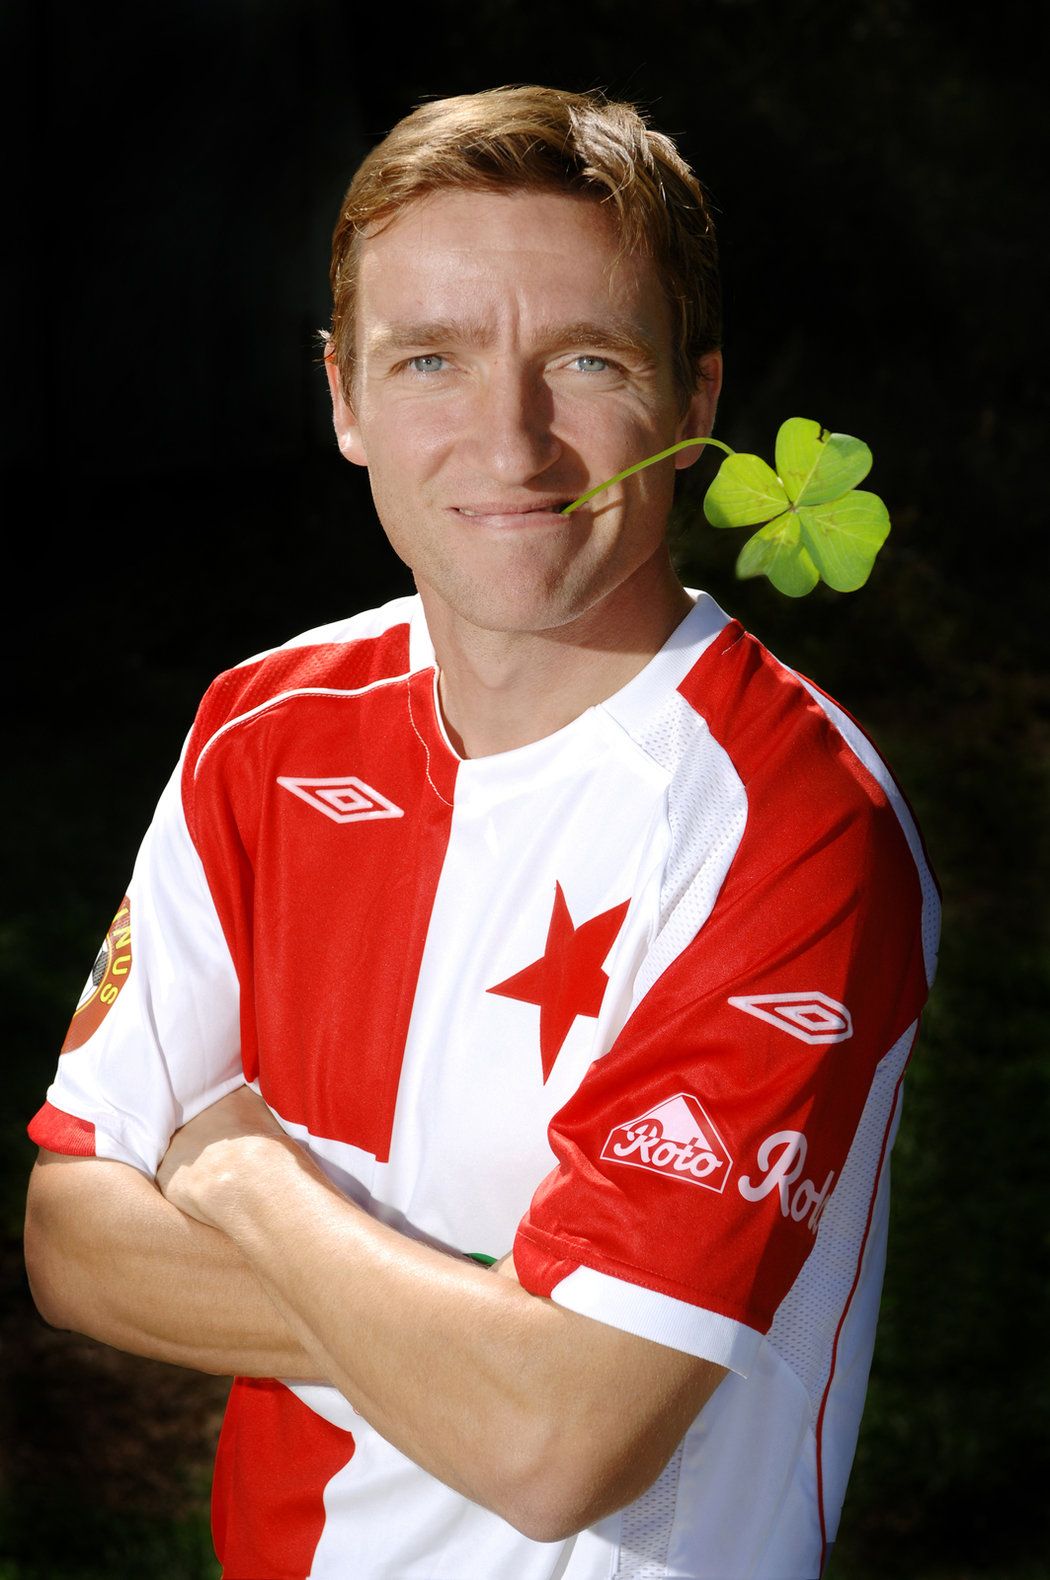 2007. Štístko Vladimír Šmicer pózuje v dresu Slavie po svém návratu do Česka před ligovým ročníkem 2007/2008.